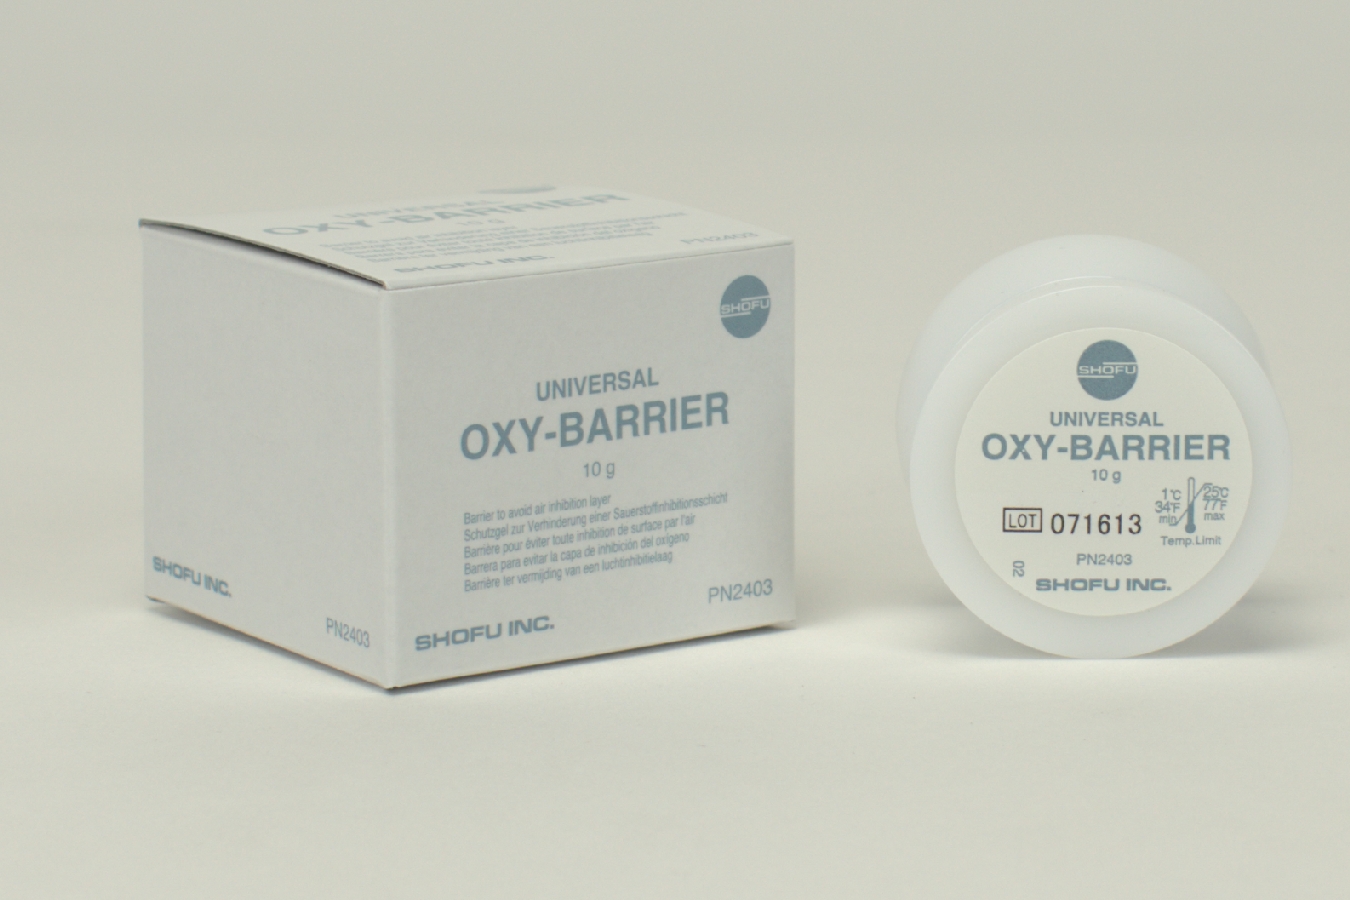 Universal Oxy-Barrier Gel 10g